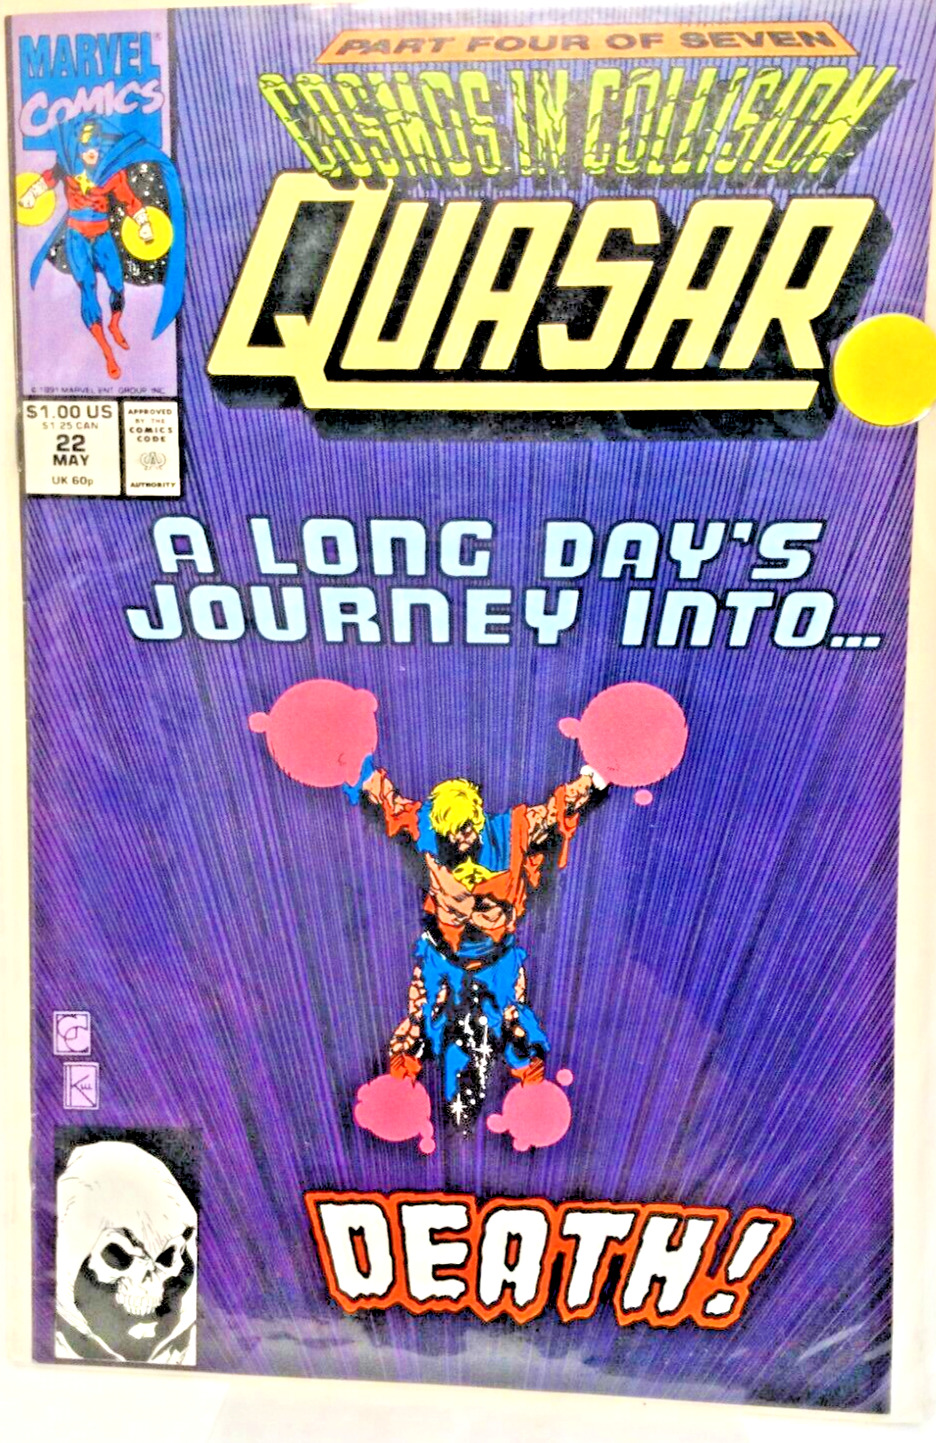 QUASAR - Vol. 1 #22 - May 1991 - Marvel Comics